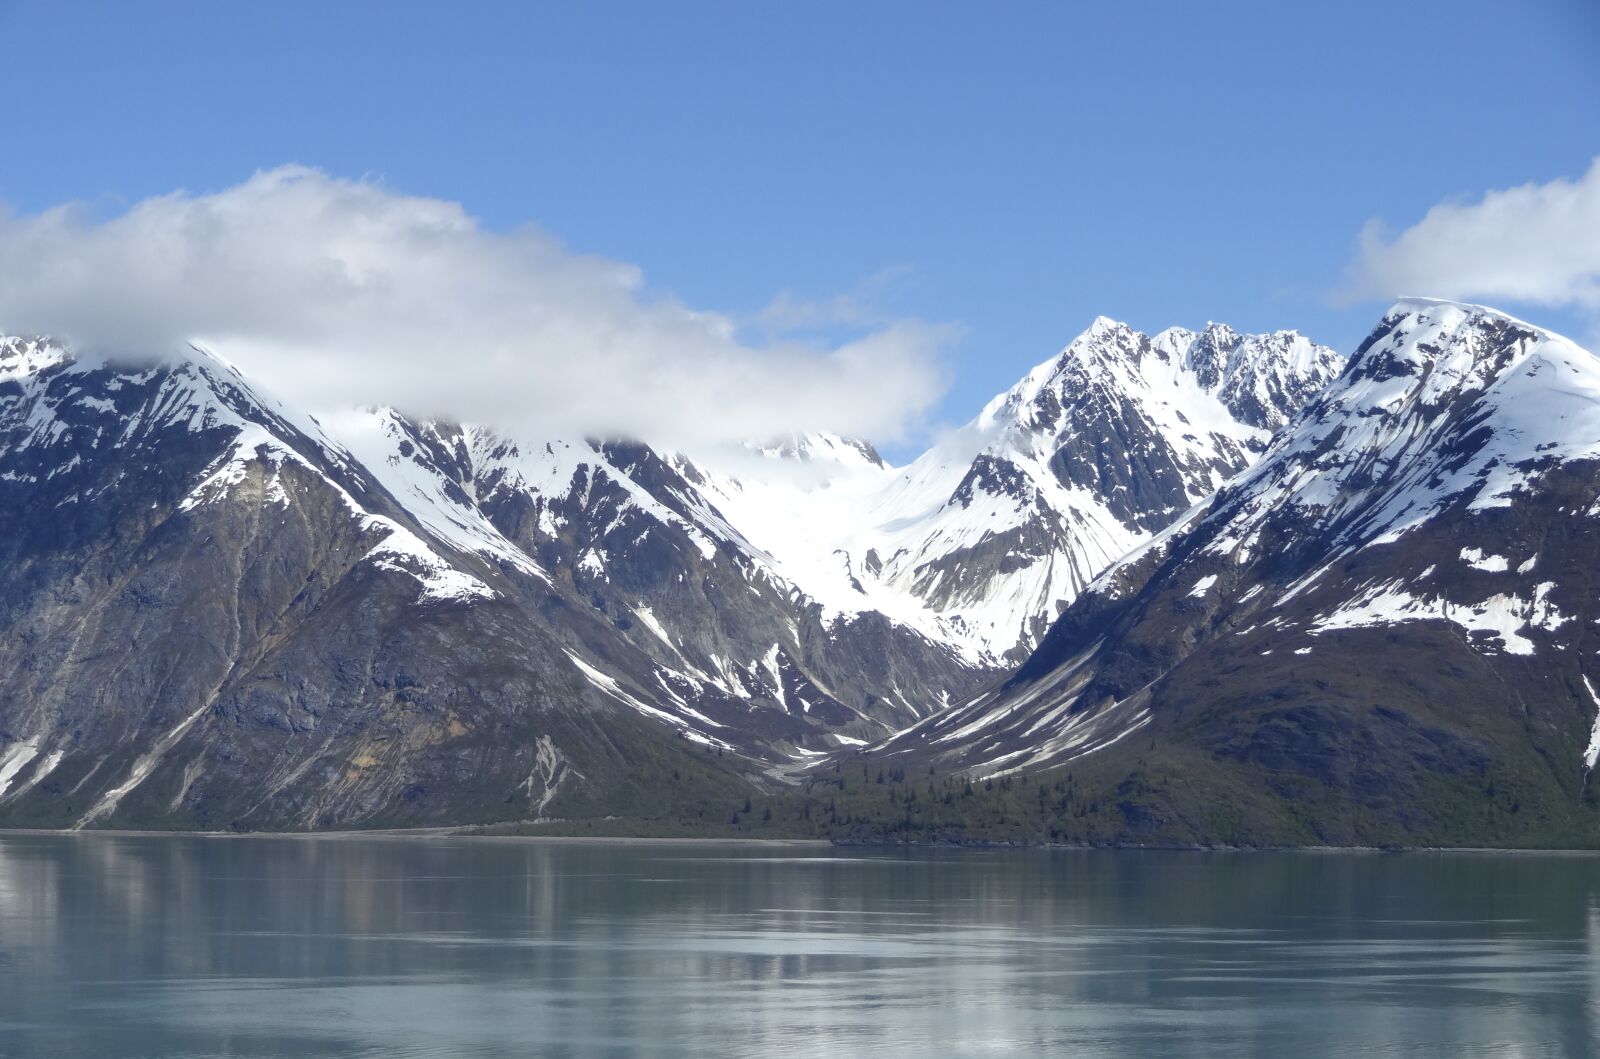 Sony Cyber-shot DSC-HX10V sample photo. Glacier bay, alaska, nature photography